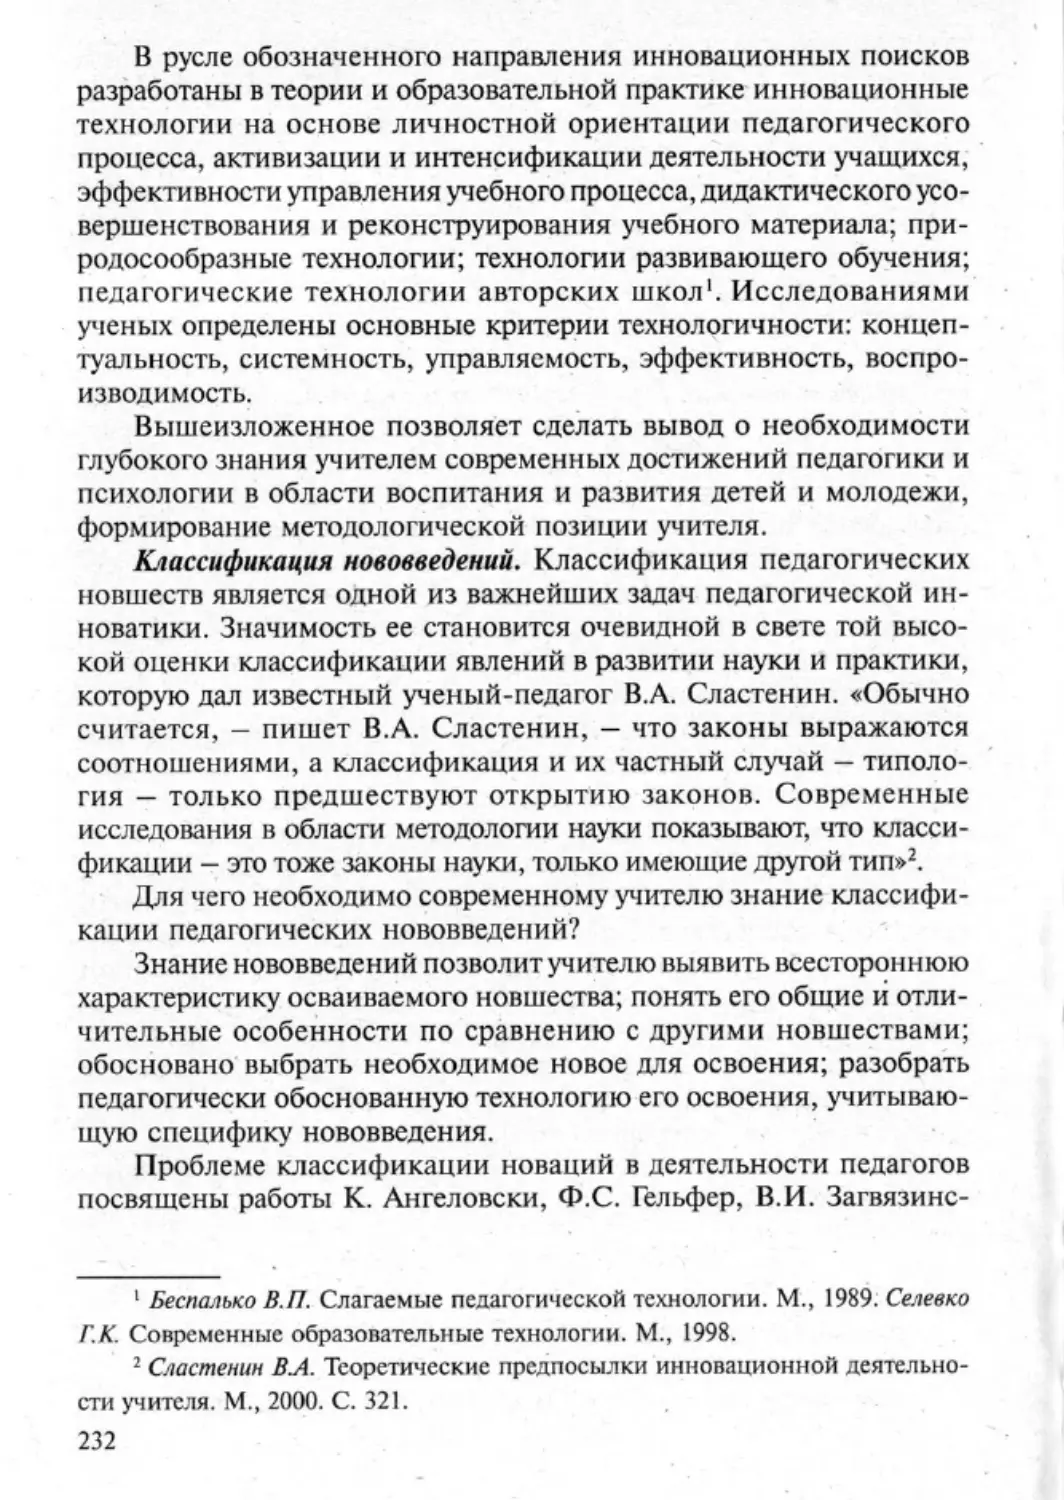 Загрекова Л.В., Николаева В.В - 0233